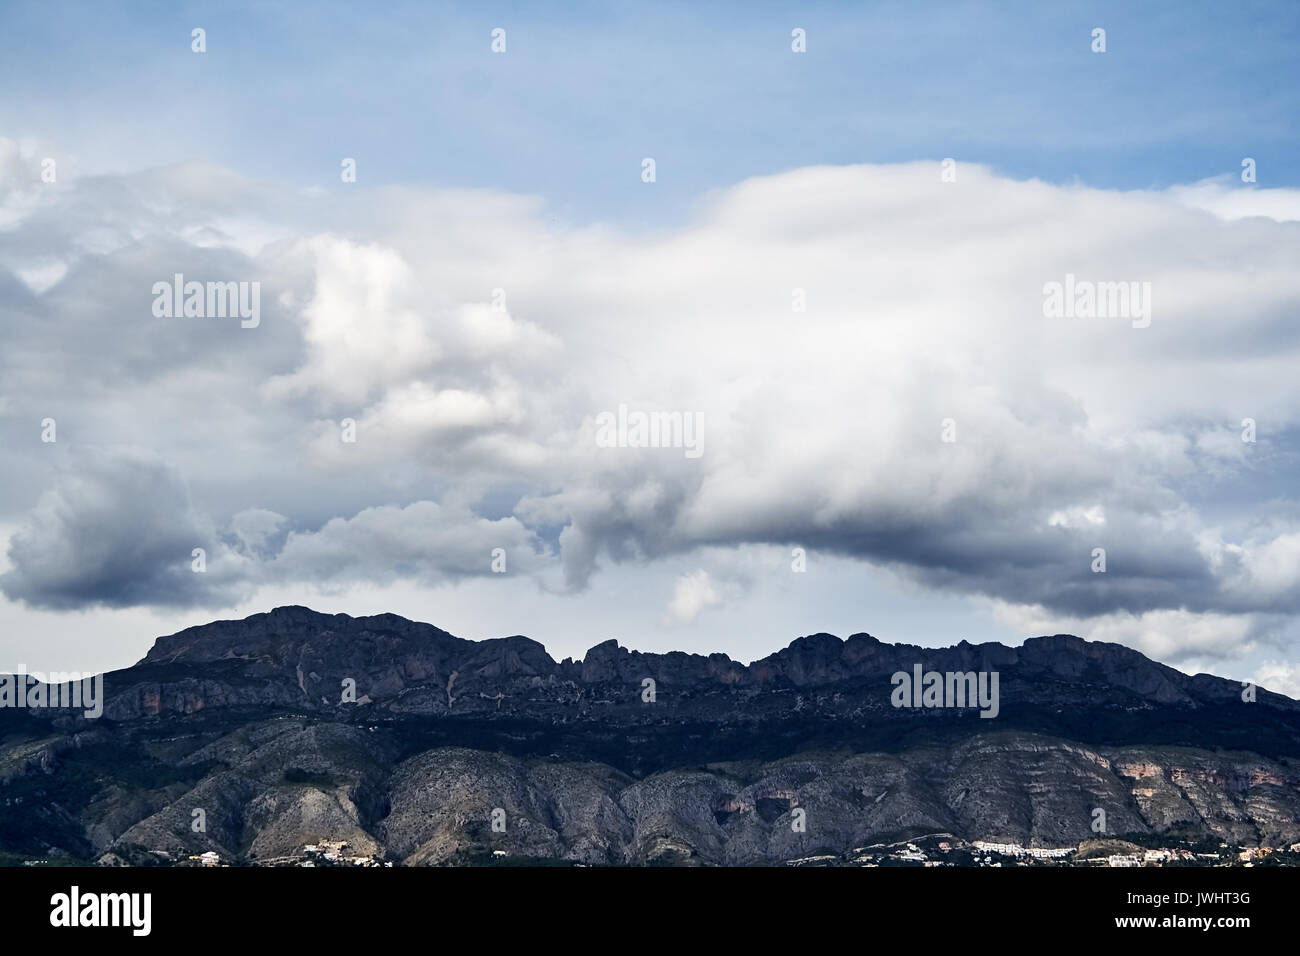 Big cloud in the sky over Altea hills Stock Photo